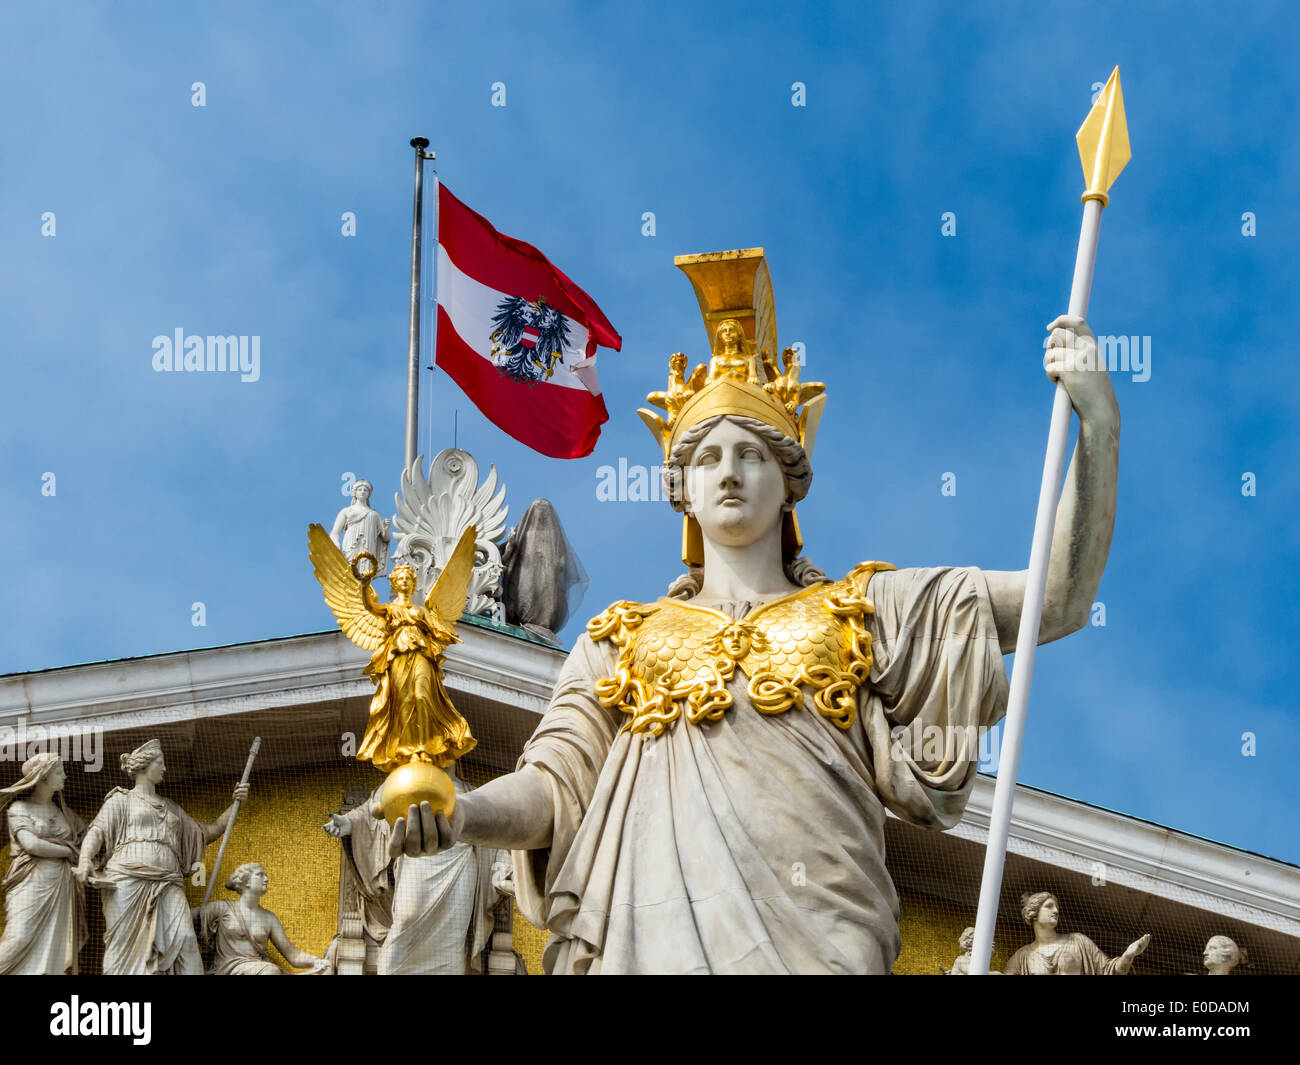 " Il parlamento di Vienna, ? Sterreich. Con la statua di ''Pallas Athene'' della dea greca della saggezza.', 'Dcome Parlament i Foto Stock